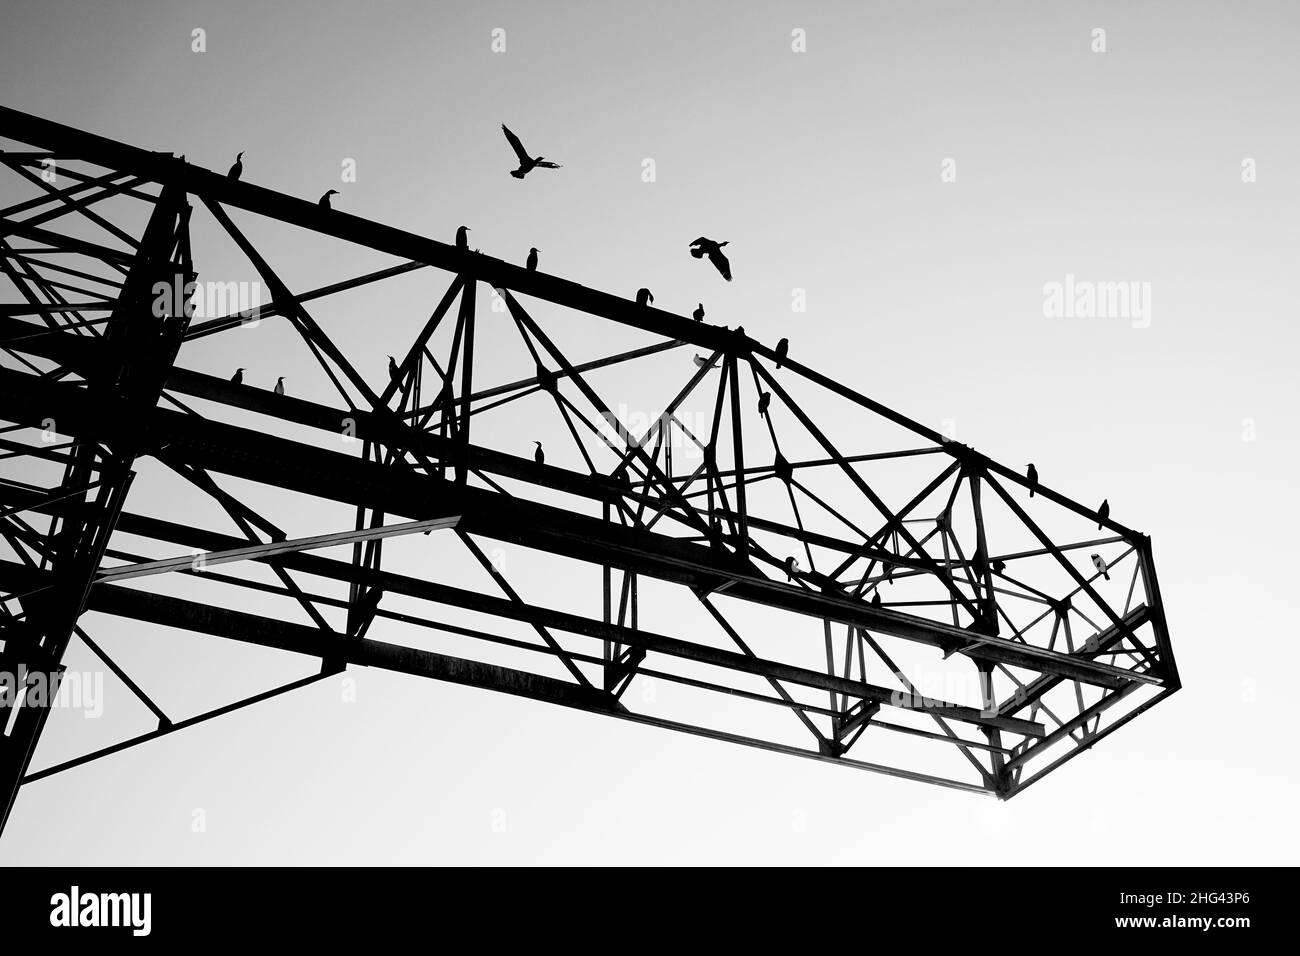 Silhouette di una gru a torre con alcuni uccelli arroccati sulla struttura metallica e cormorani in volo, a Lione, Francia Foto Stock